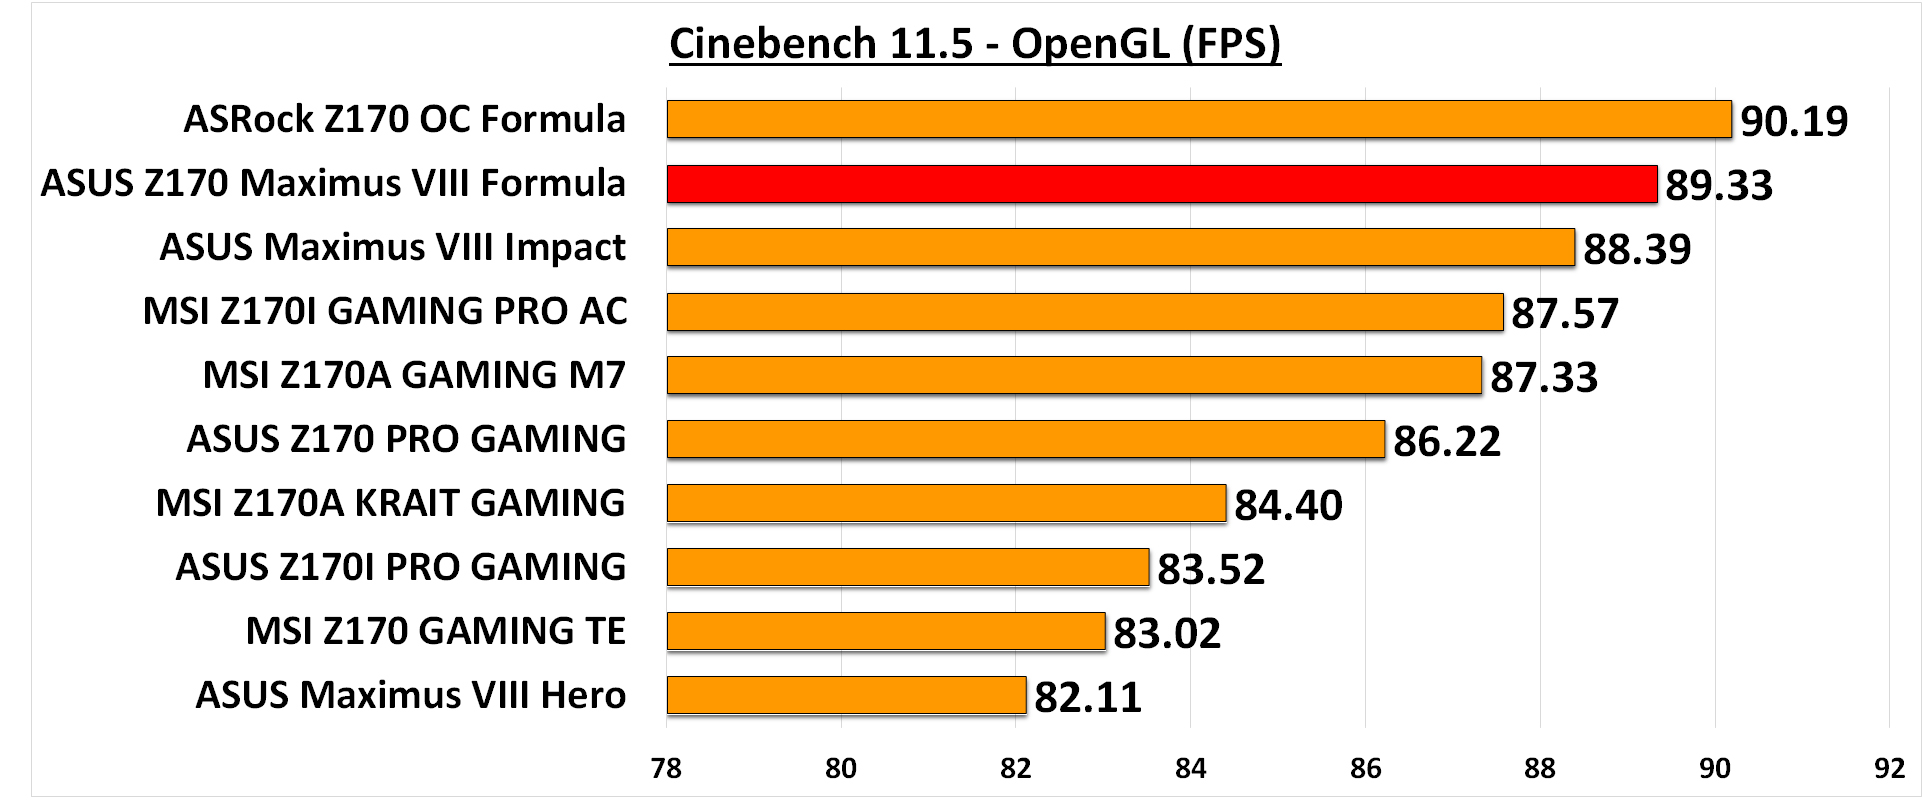 Cinebench 11.5 OpenGL